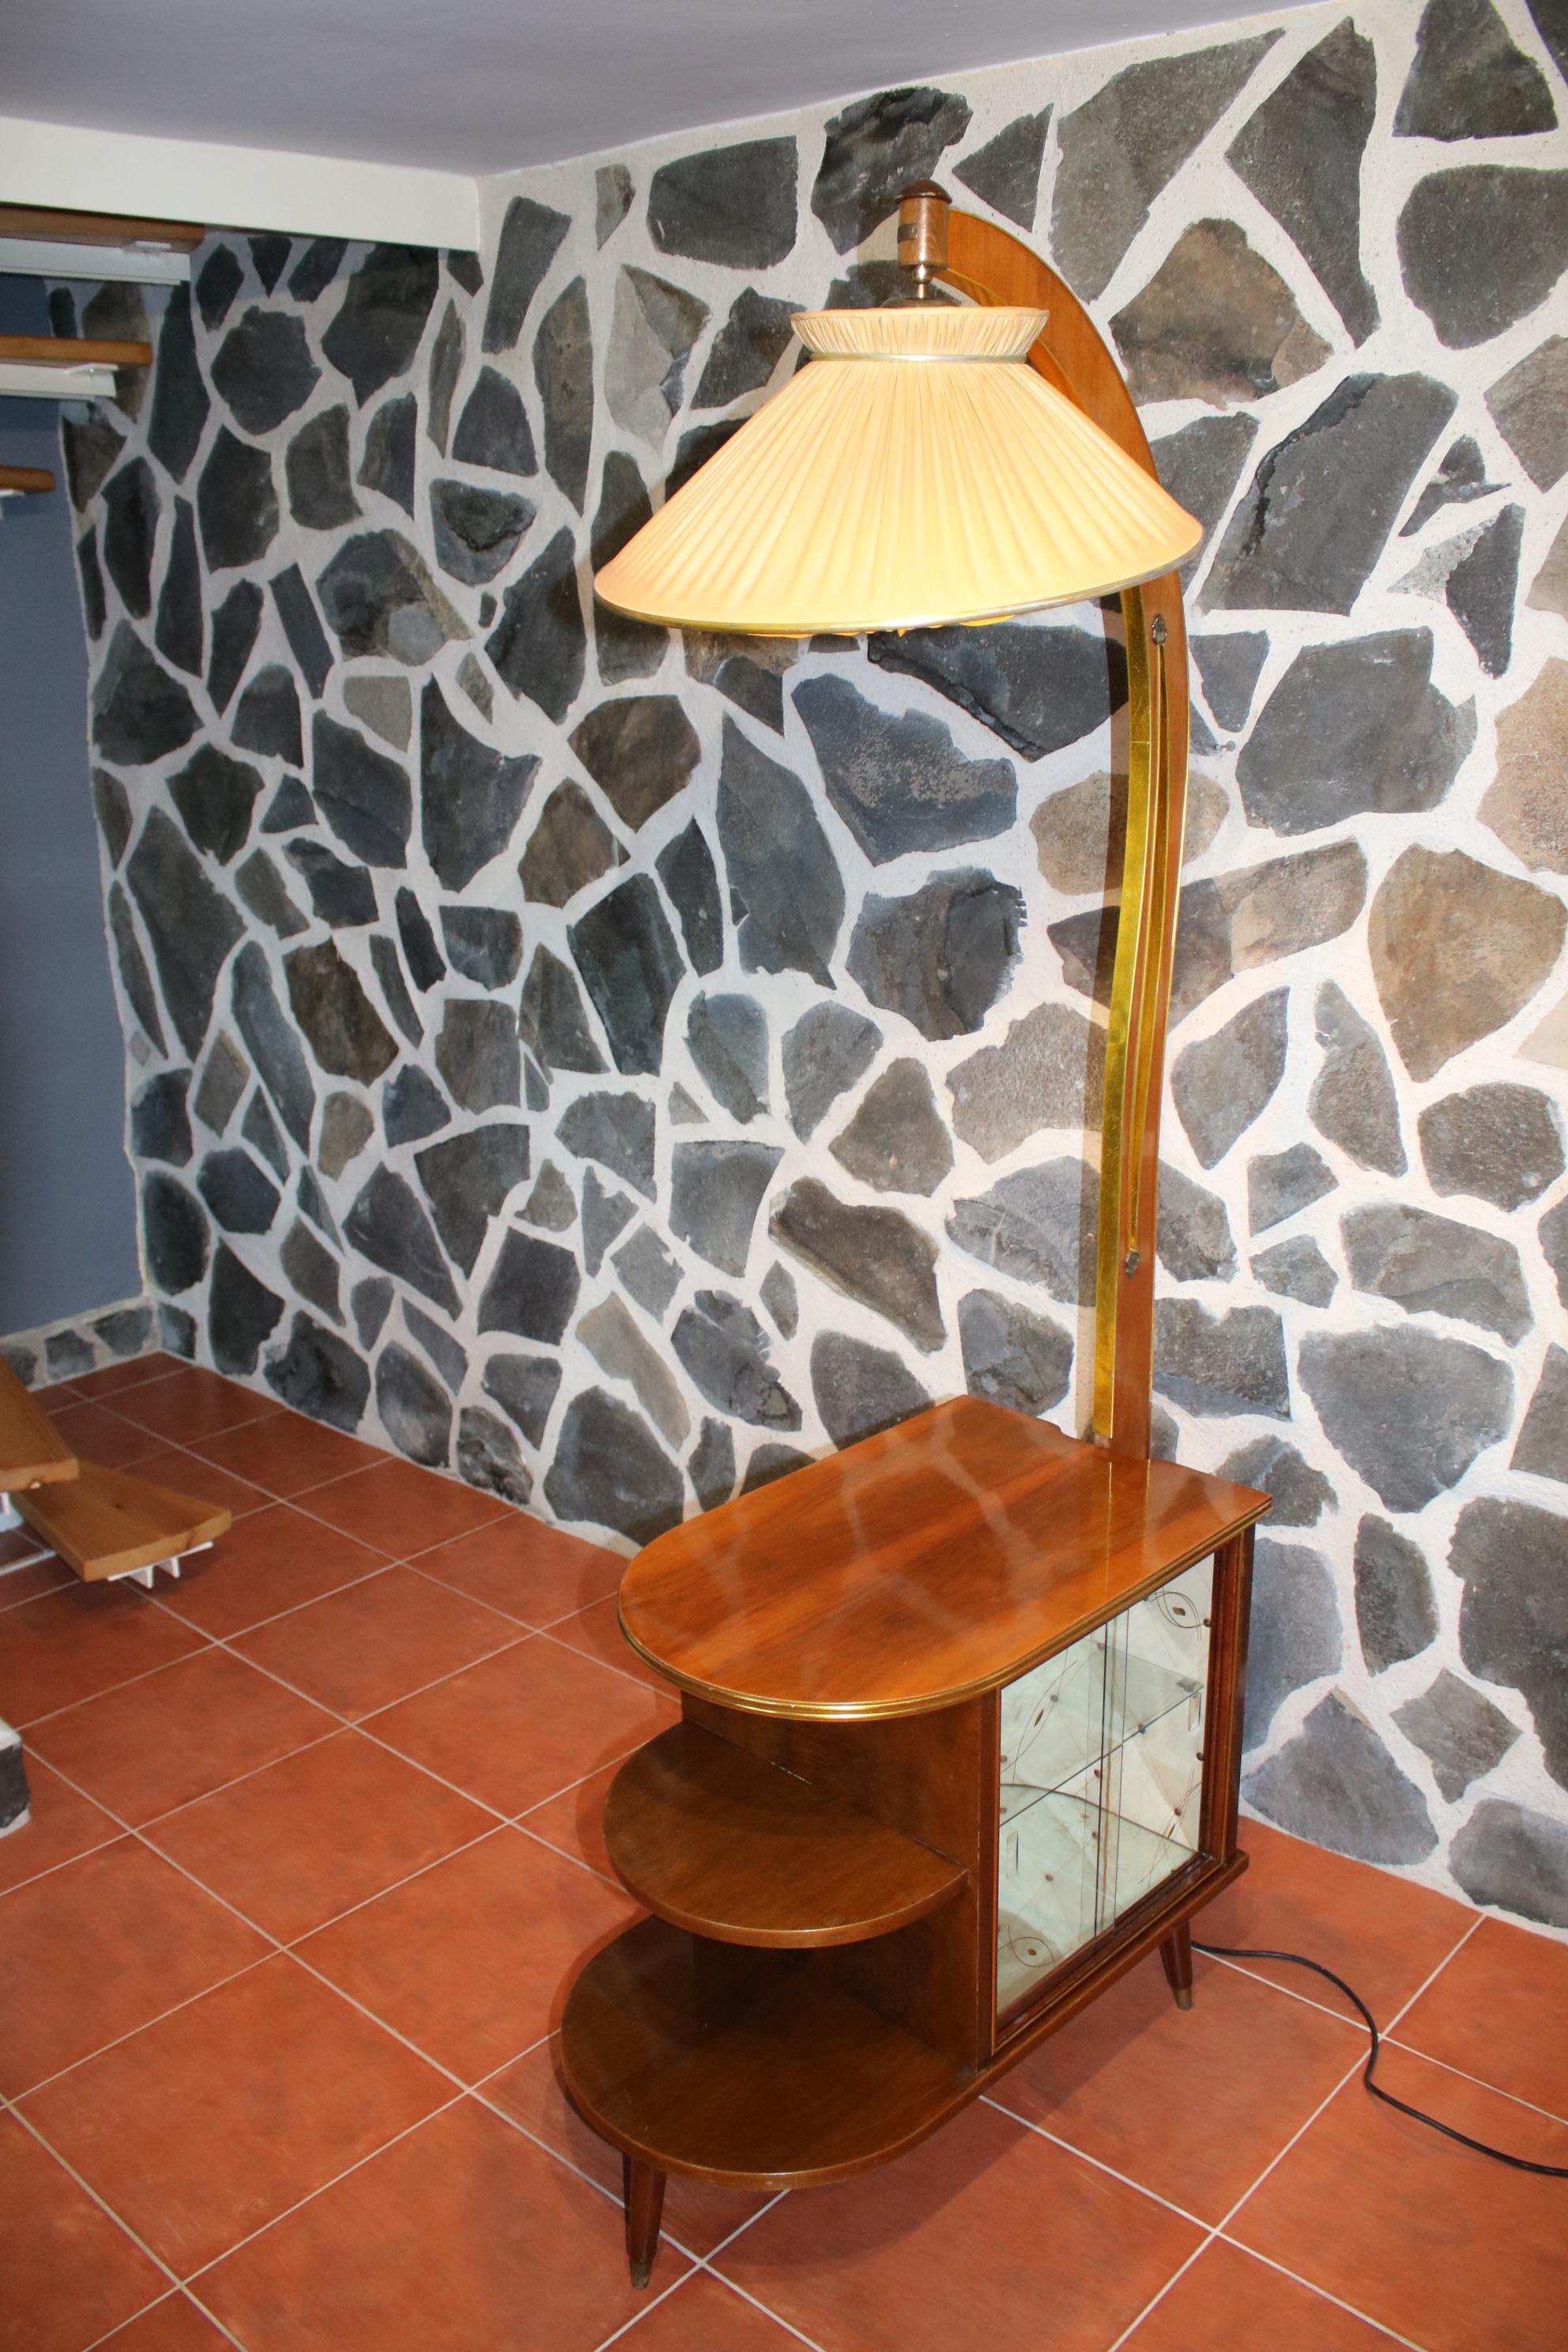 Cette magnifique lampe tchèque du milieu du 20e siècle comporte un meuble à liqueur intégré, qui est magnifiquement éclairé par une ampoule intégrée. Le meuble à liqueurs est doté d'une magnifique tapisserie d'origine.